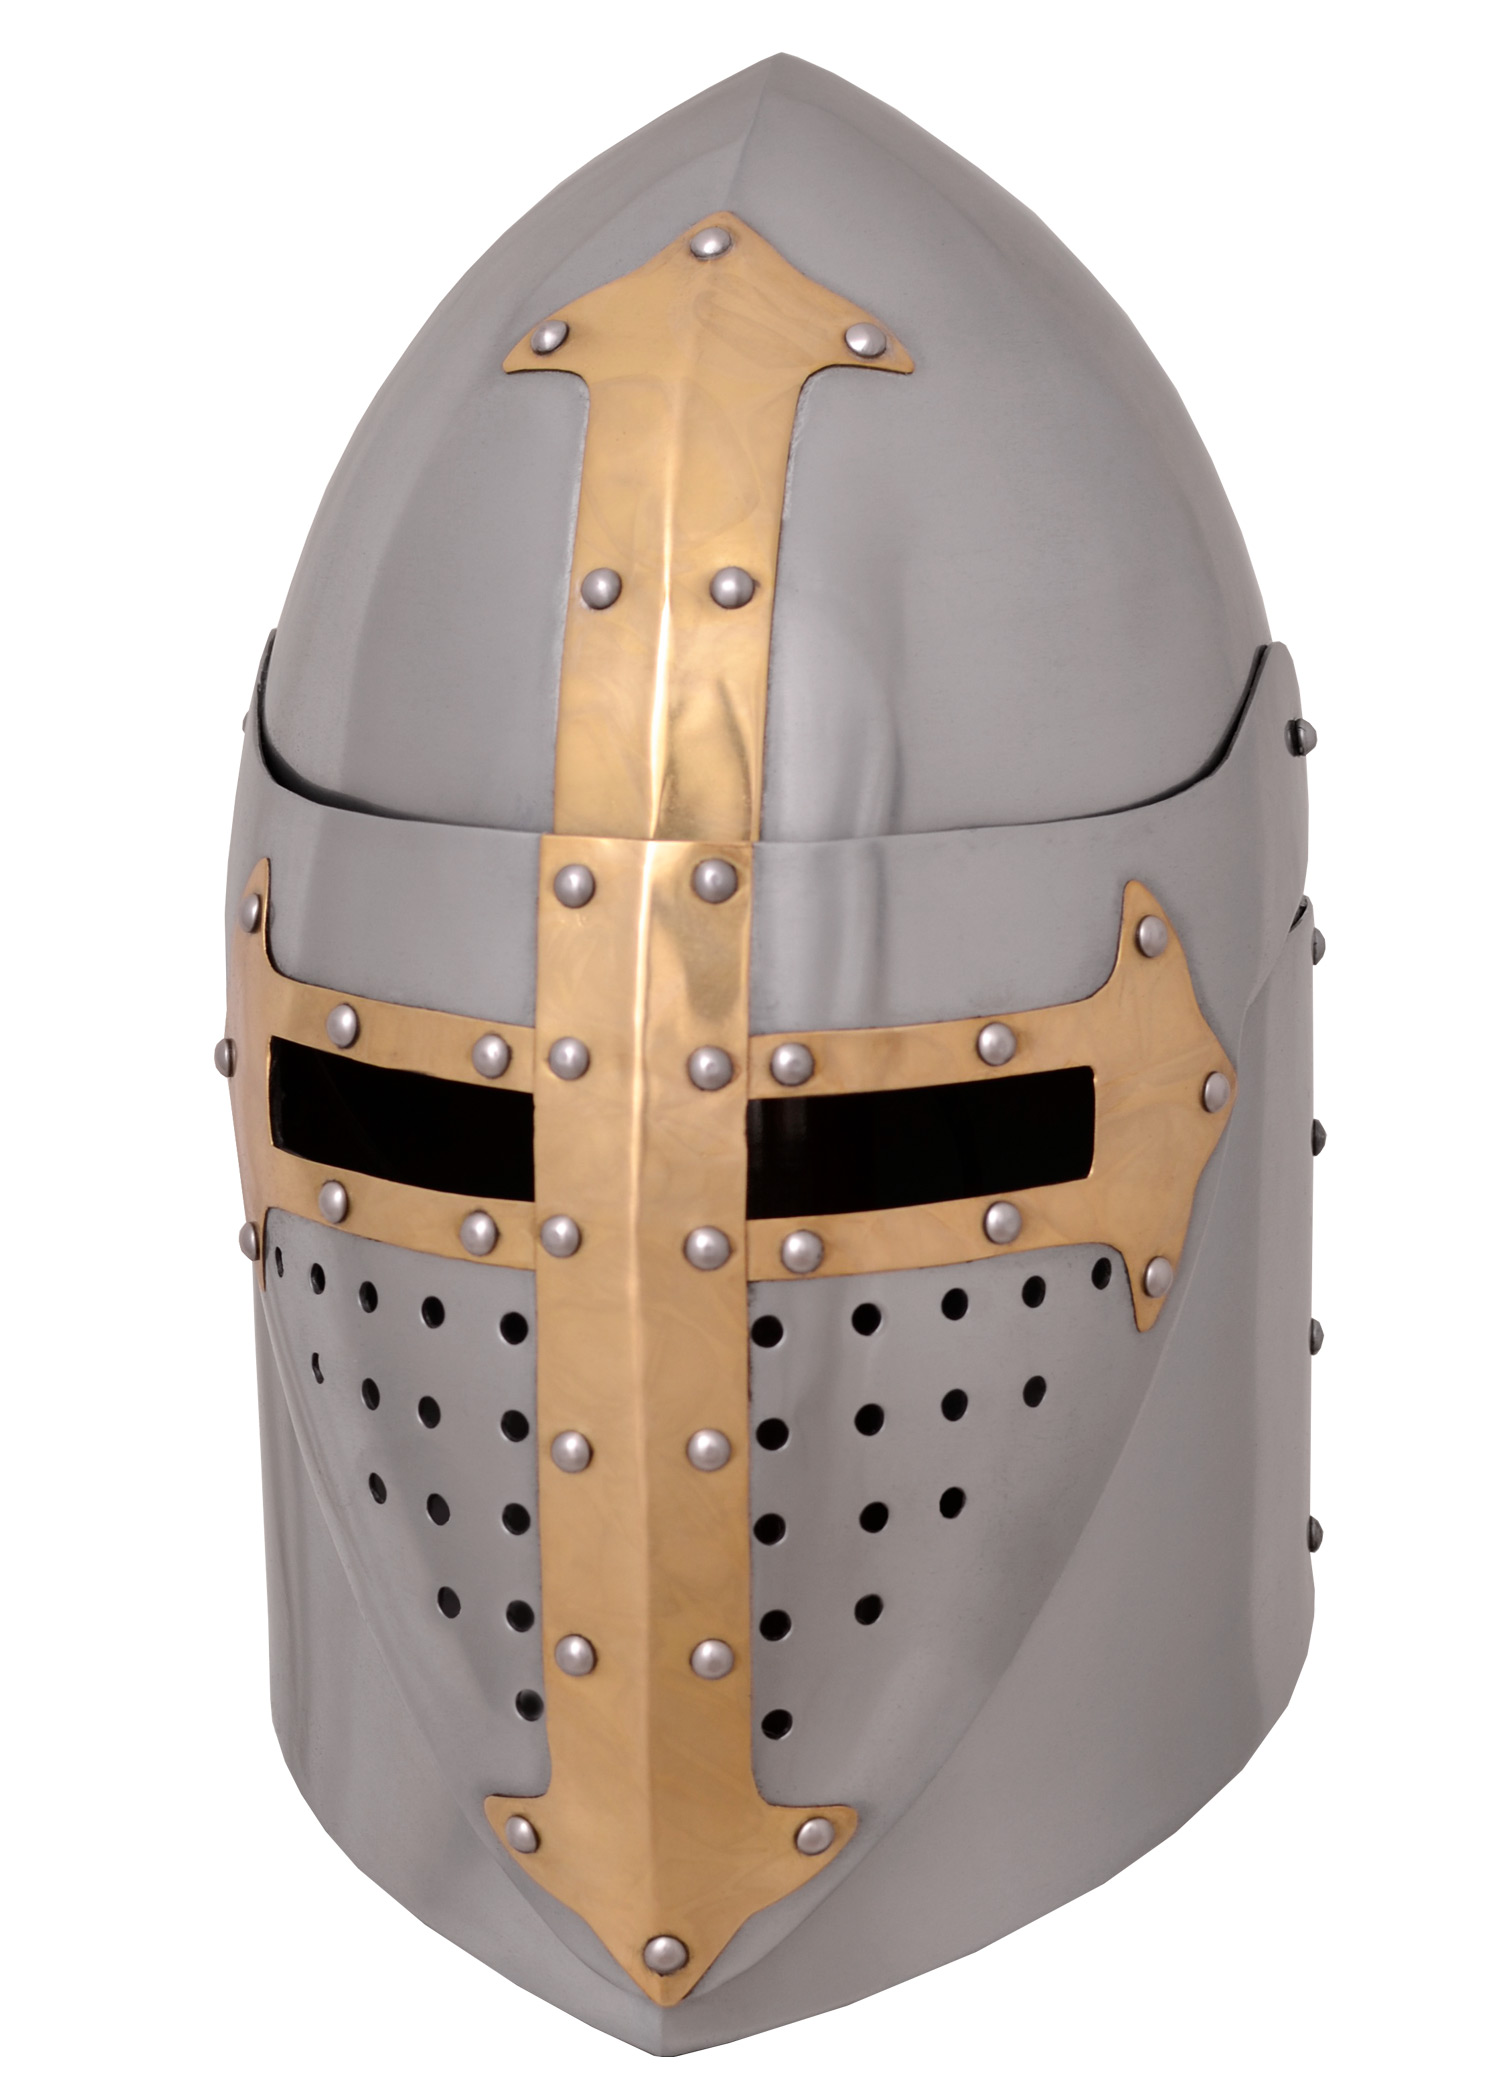 Medieval Knight Armor Crusader Templar Sugarloaf  Helmet Great Helm Brass Cross